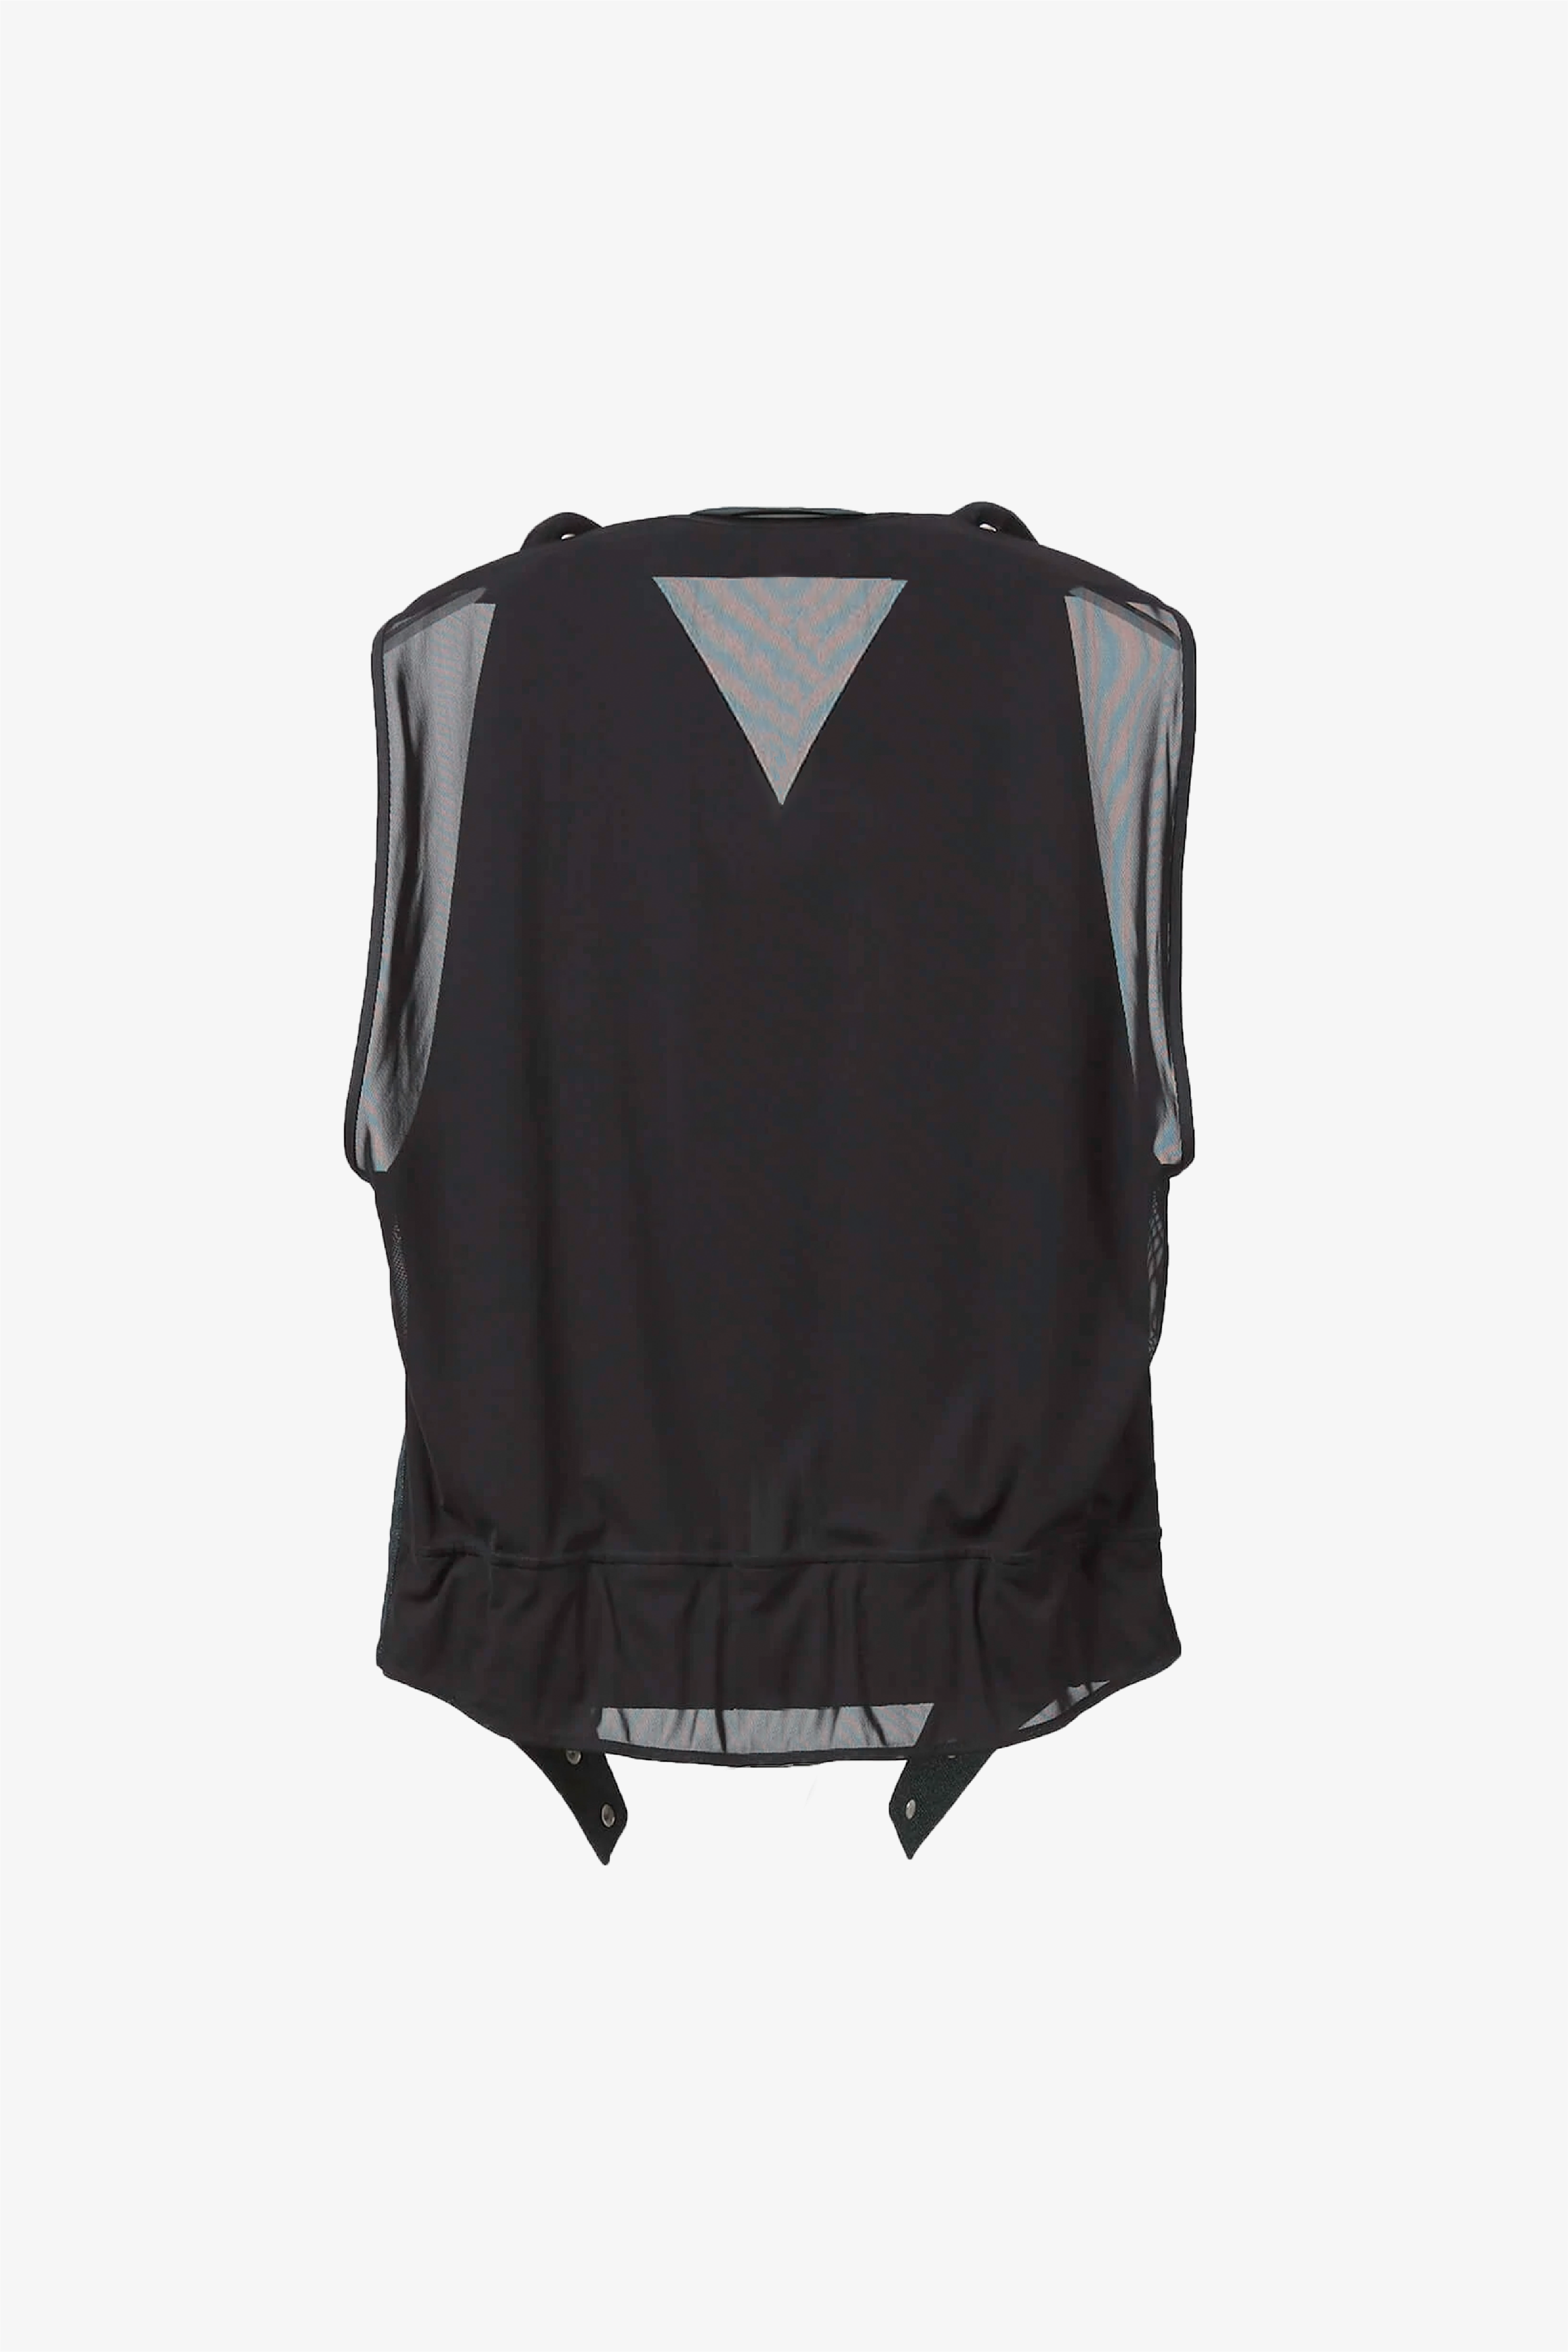 Selectshop FRAME - AFFIX Chap Vest Outerwear Dubai